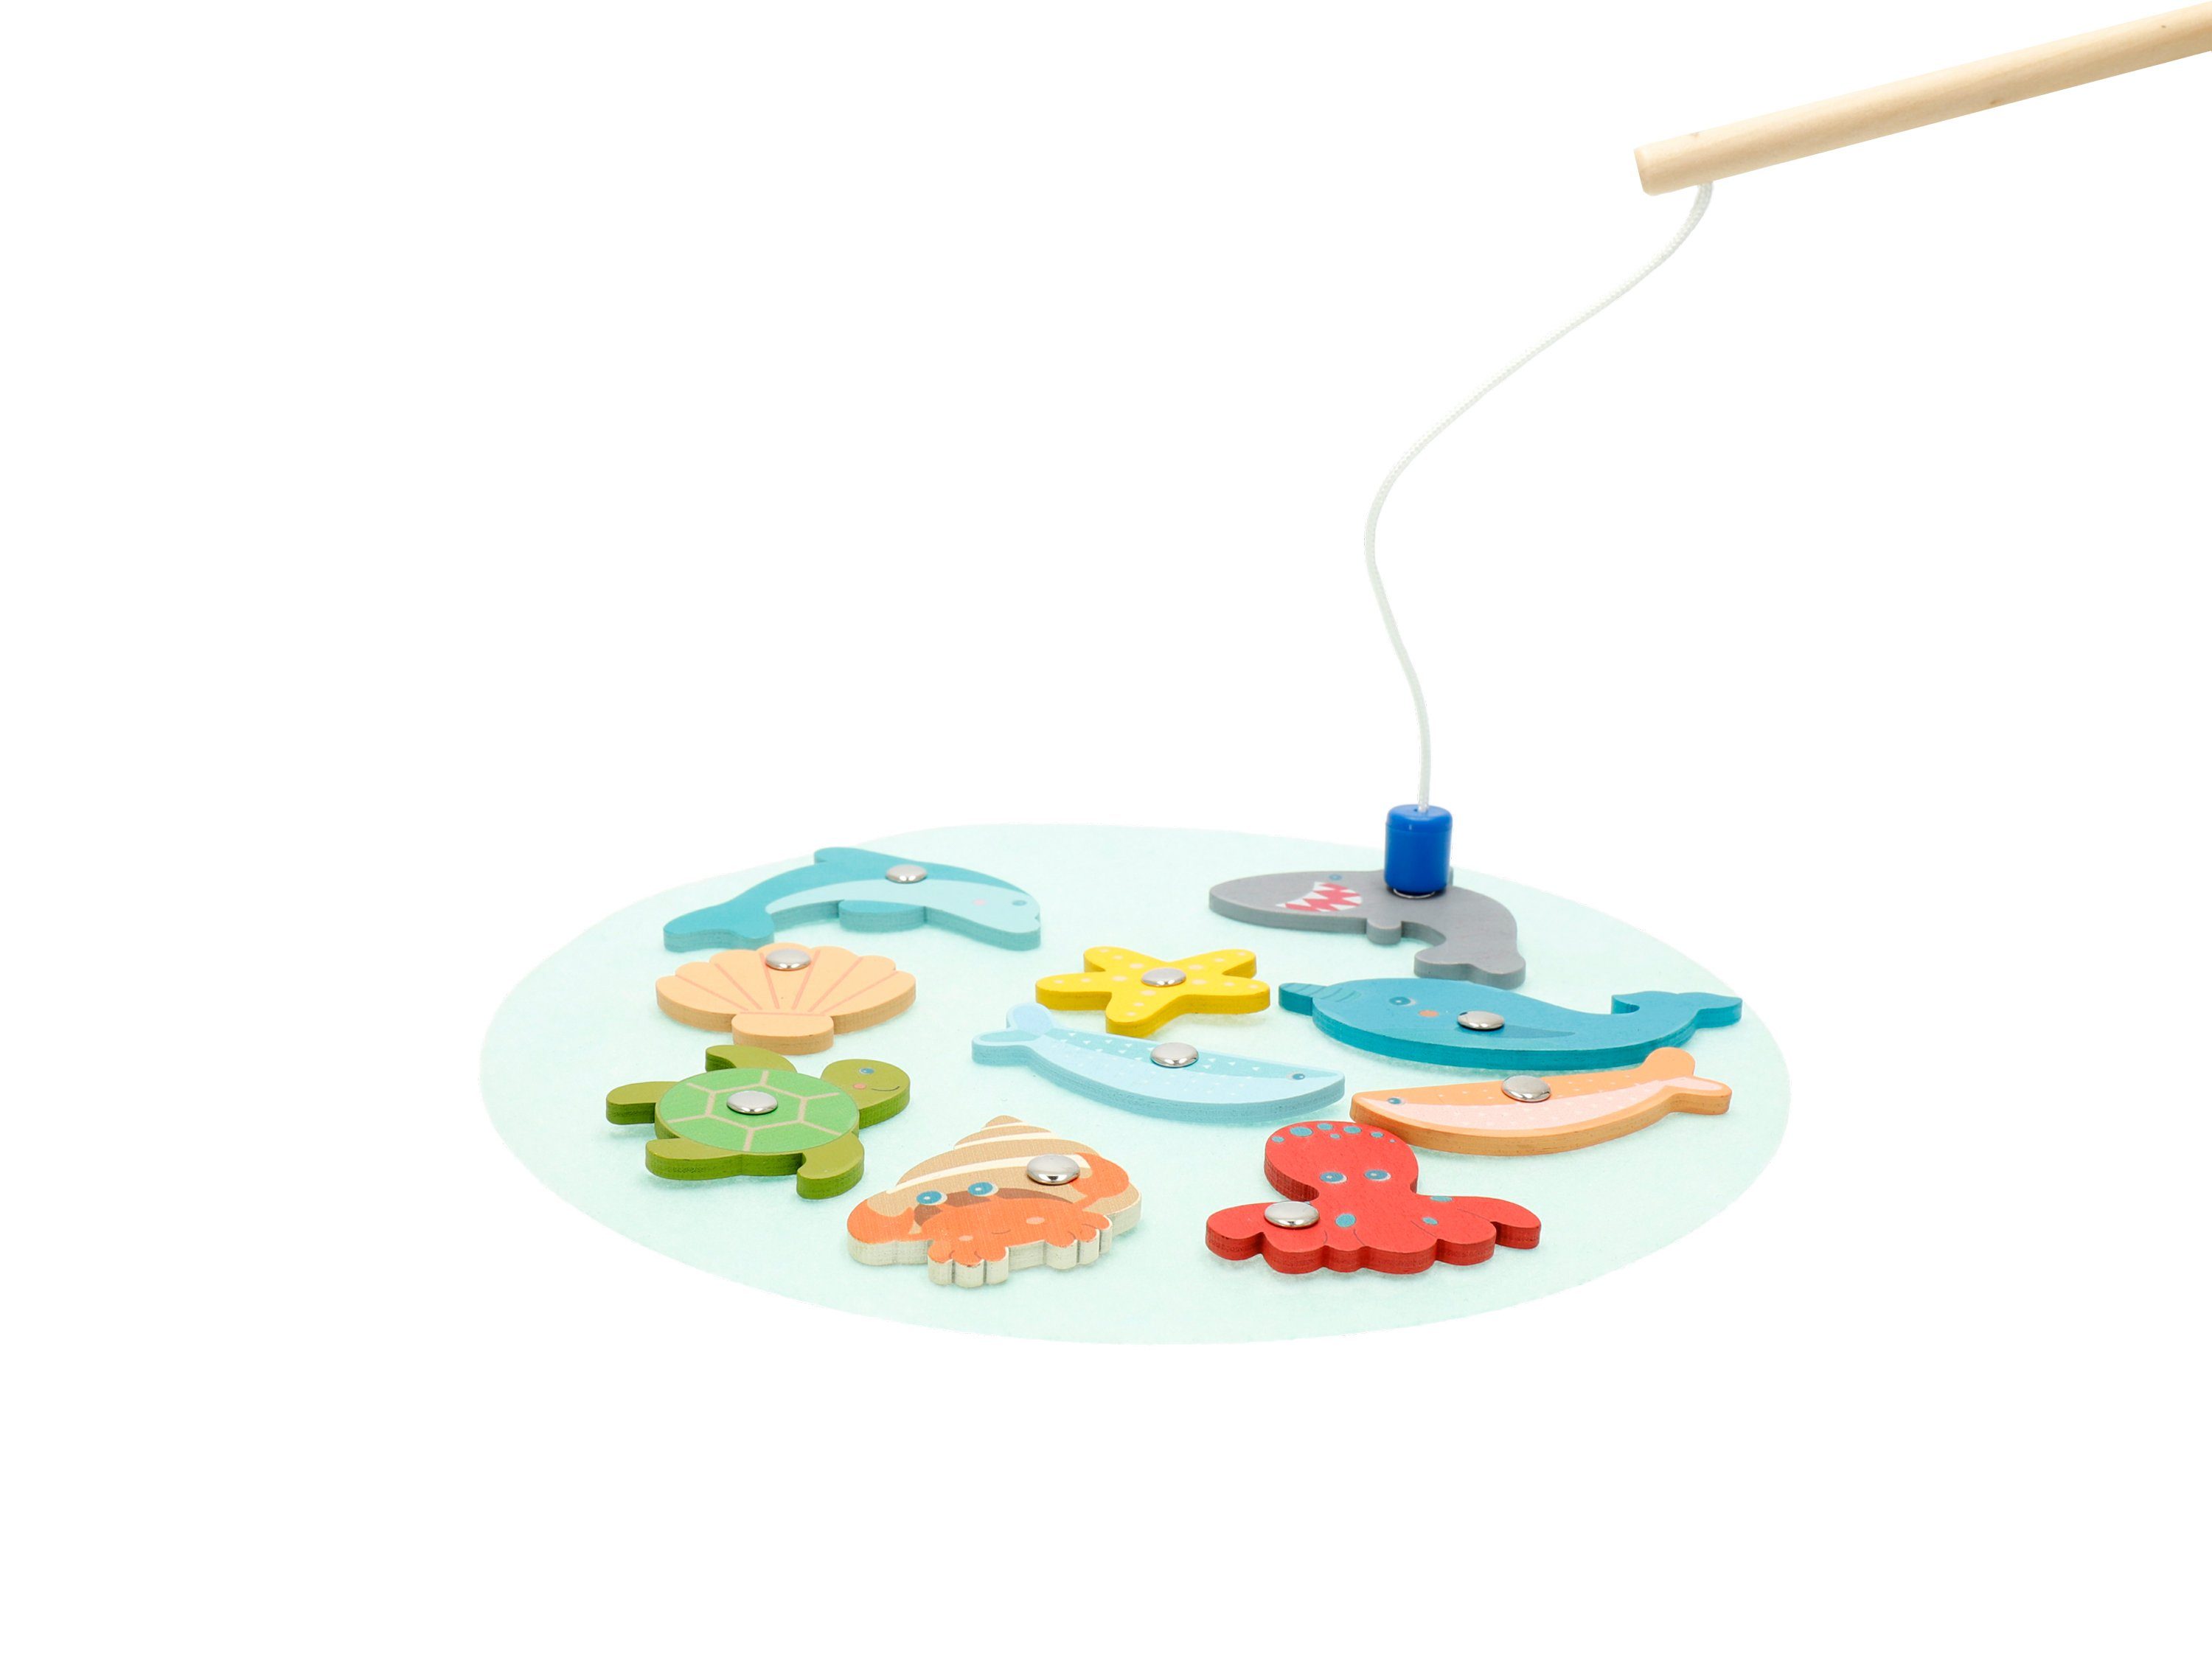 Angelspiel für Kinder Magnetspiel Montessori Spielzeug mit Lichtern und Musik 